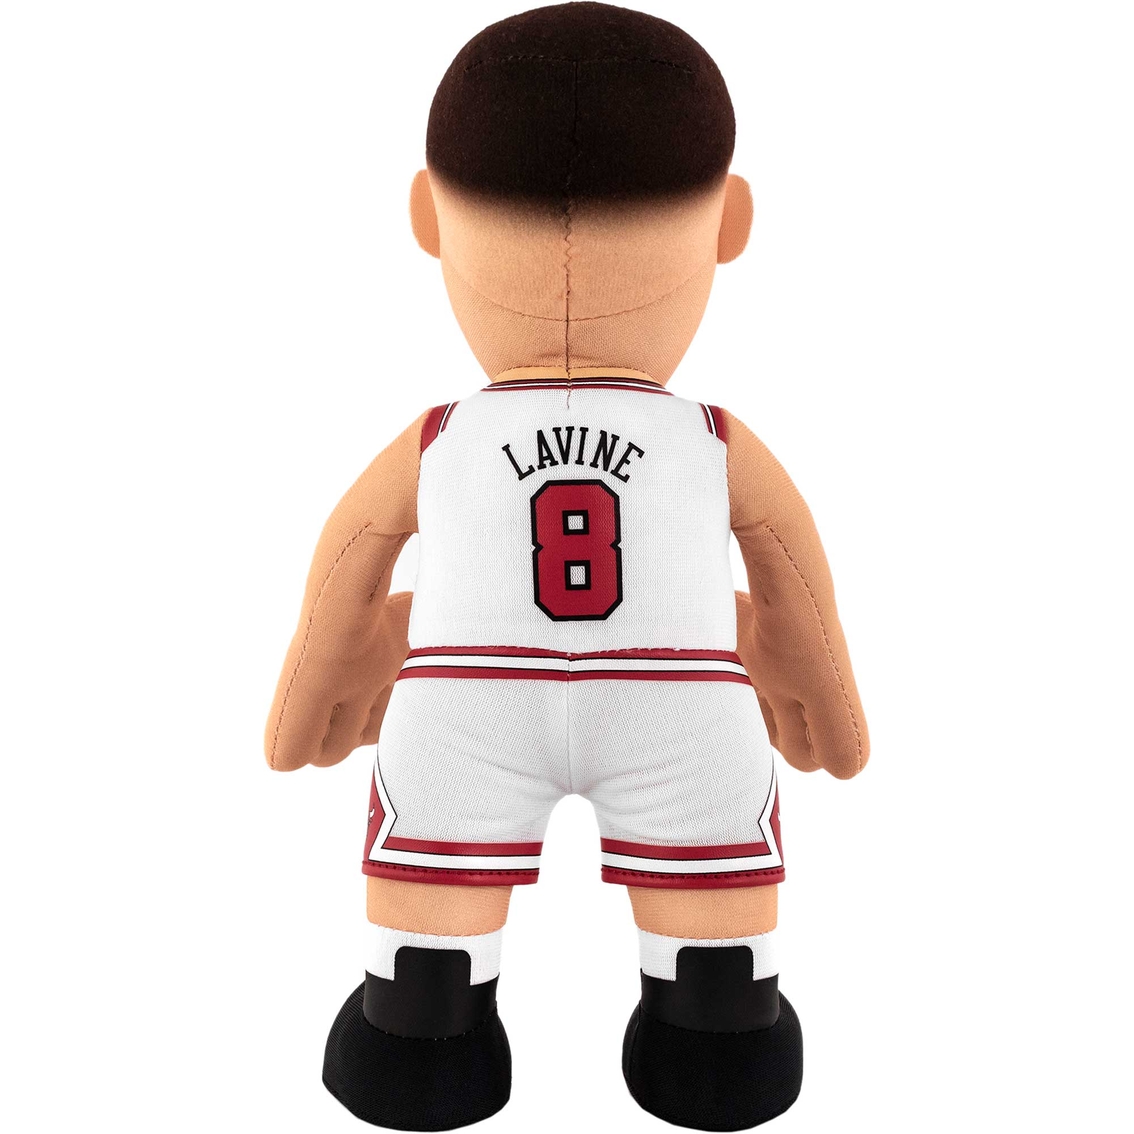 NBA Chicago Bulls Zach LaVine 10 in. Plush Figure - Image 2 of 3